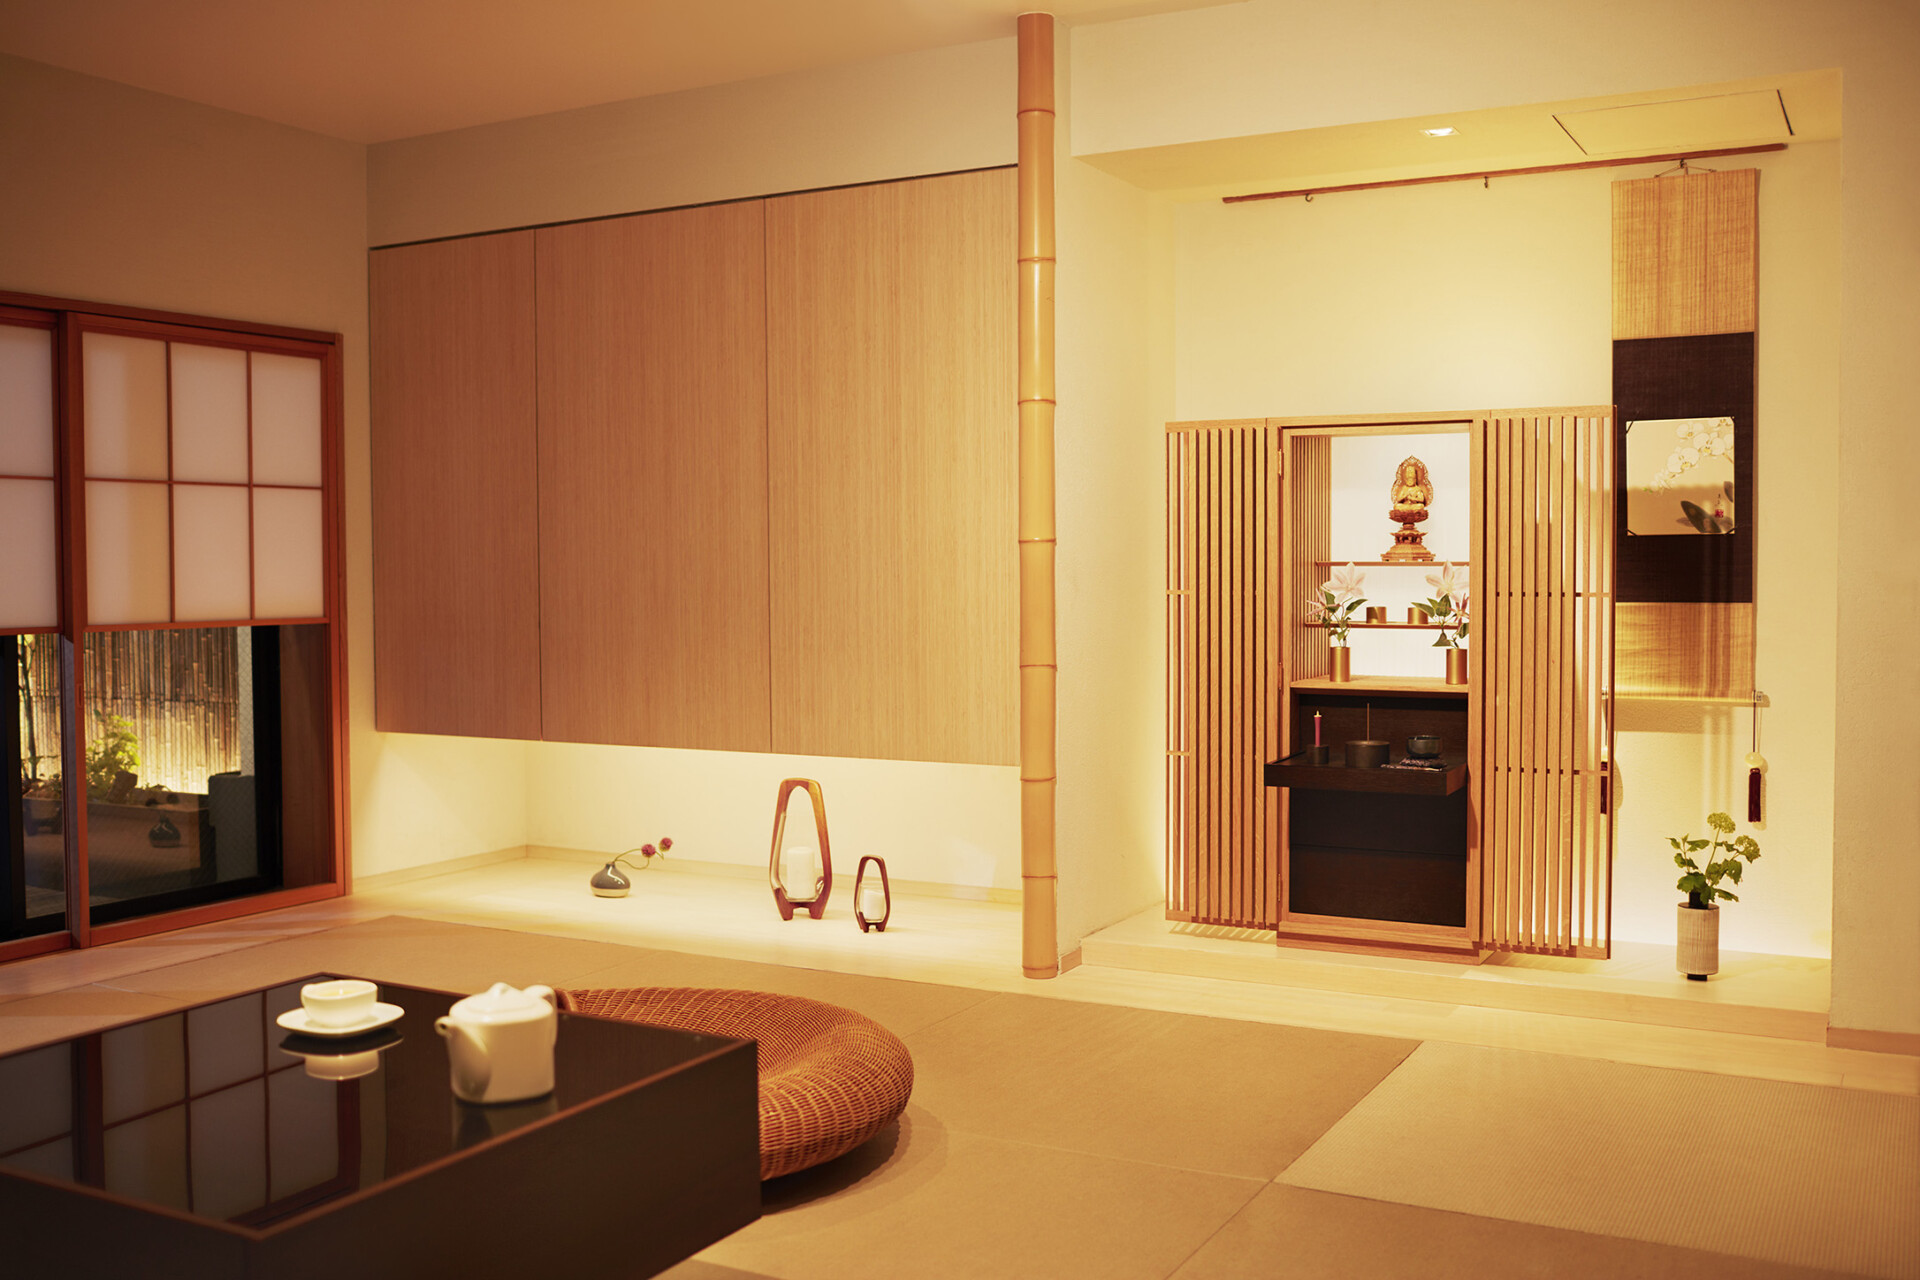 建築家・隈研吾による現代の日本の家に馴染む美しさを追求した究極の和モダン仏壇『薄院』